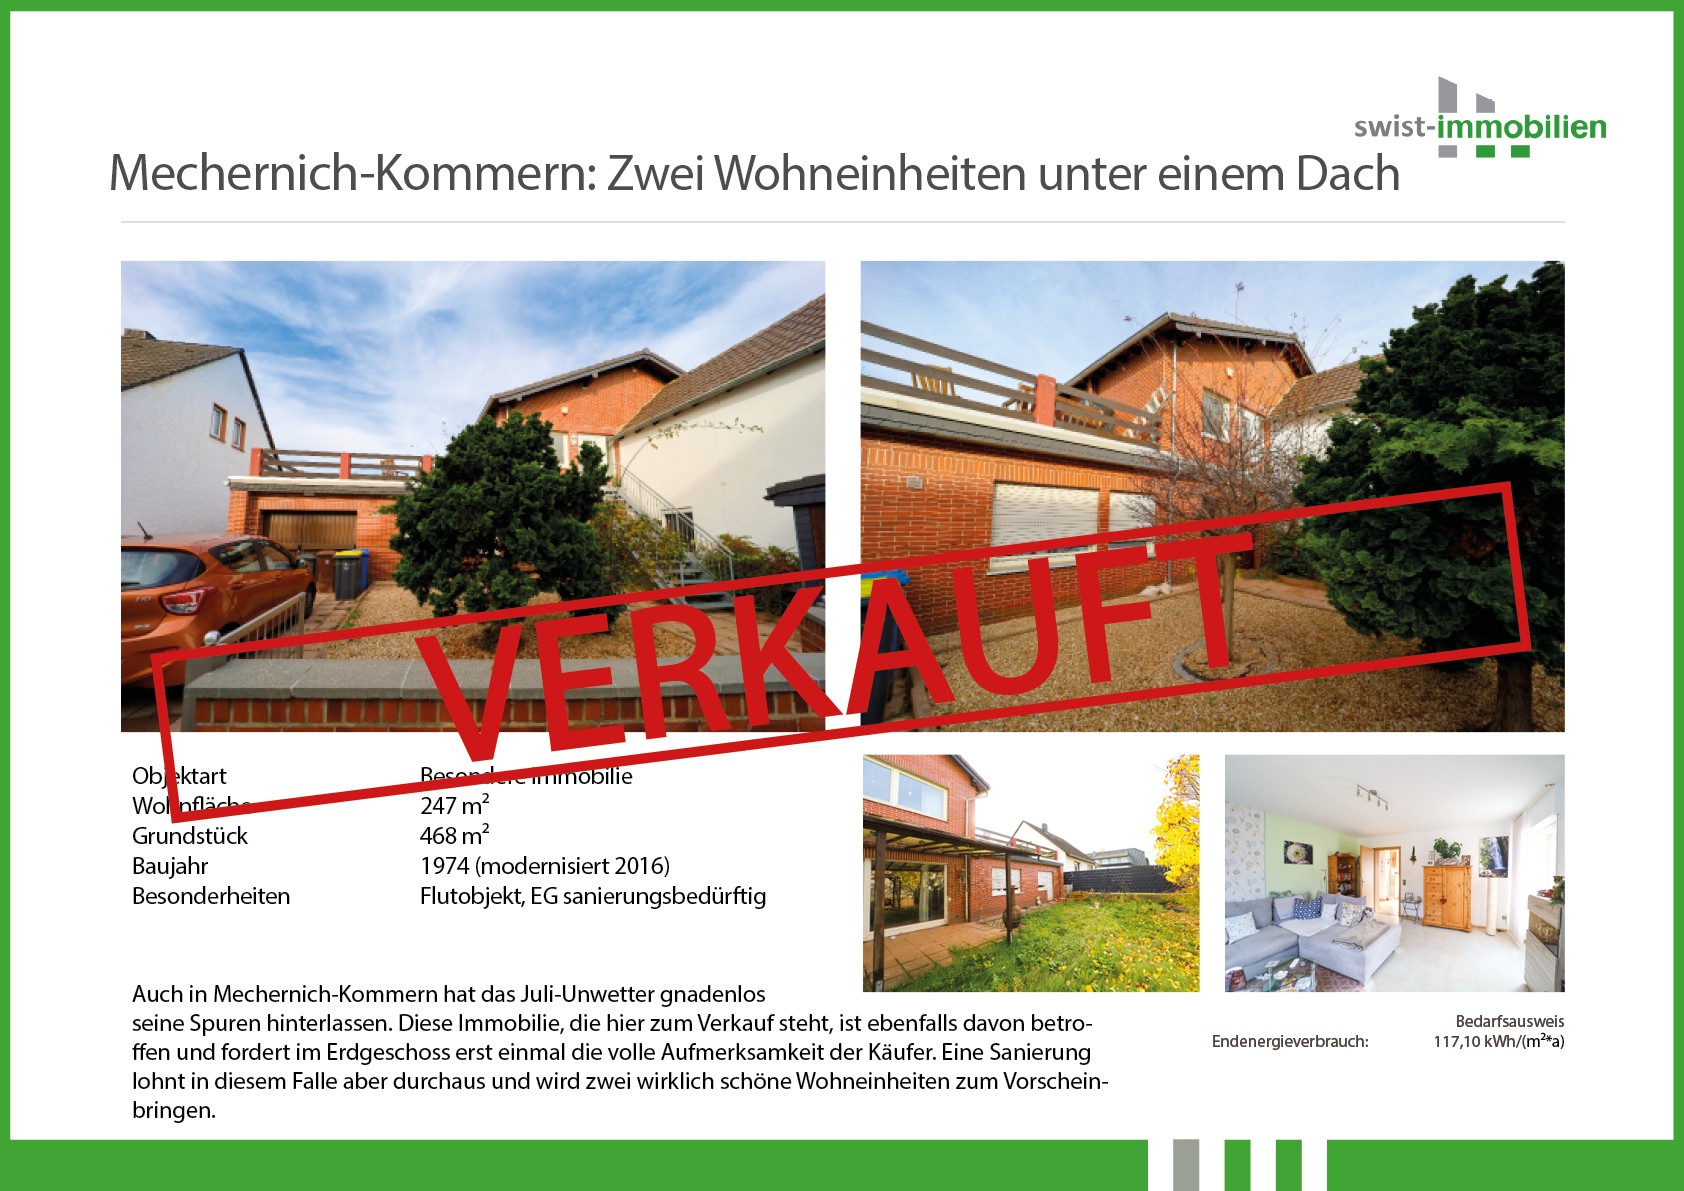 2021-11-21_Mechernich-Kommern verkauft